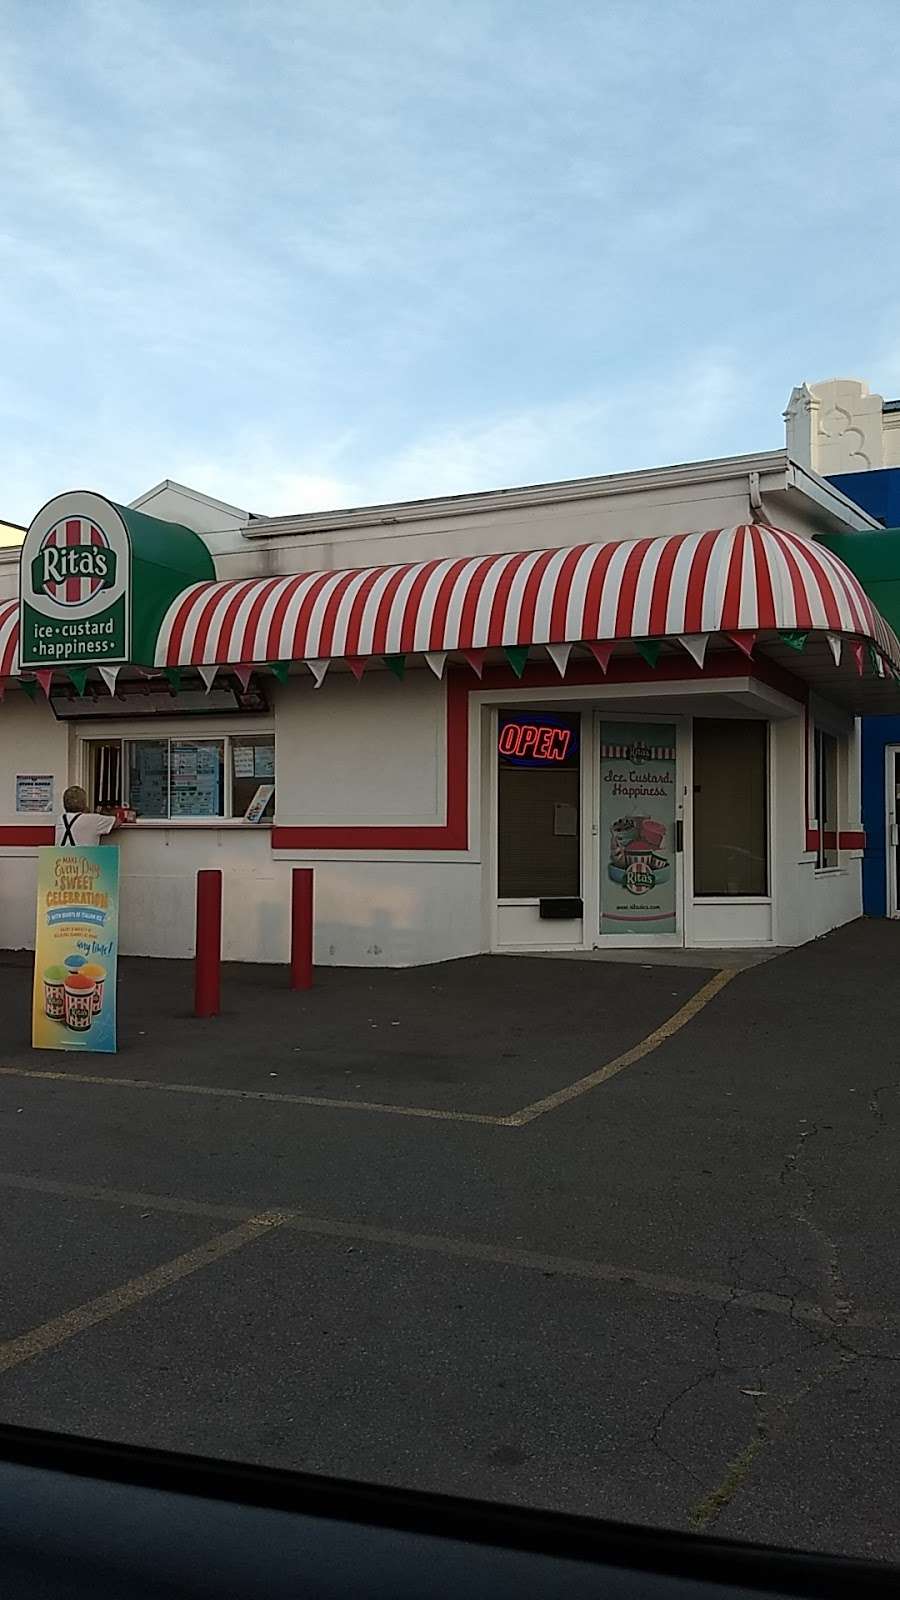 Ritas Italian Ice & Frozen Custard | 355 Market St, Kingston, PA 18704 | Phone: (570) 331-9135